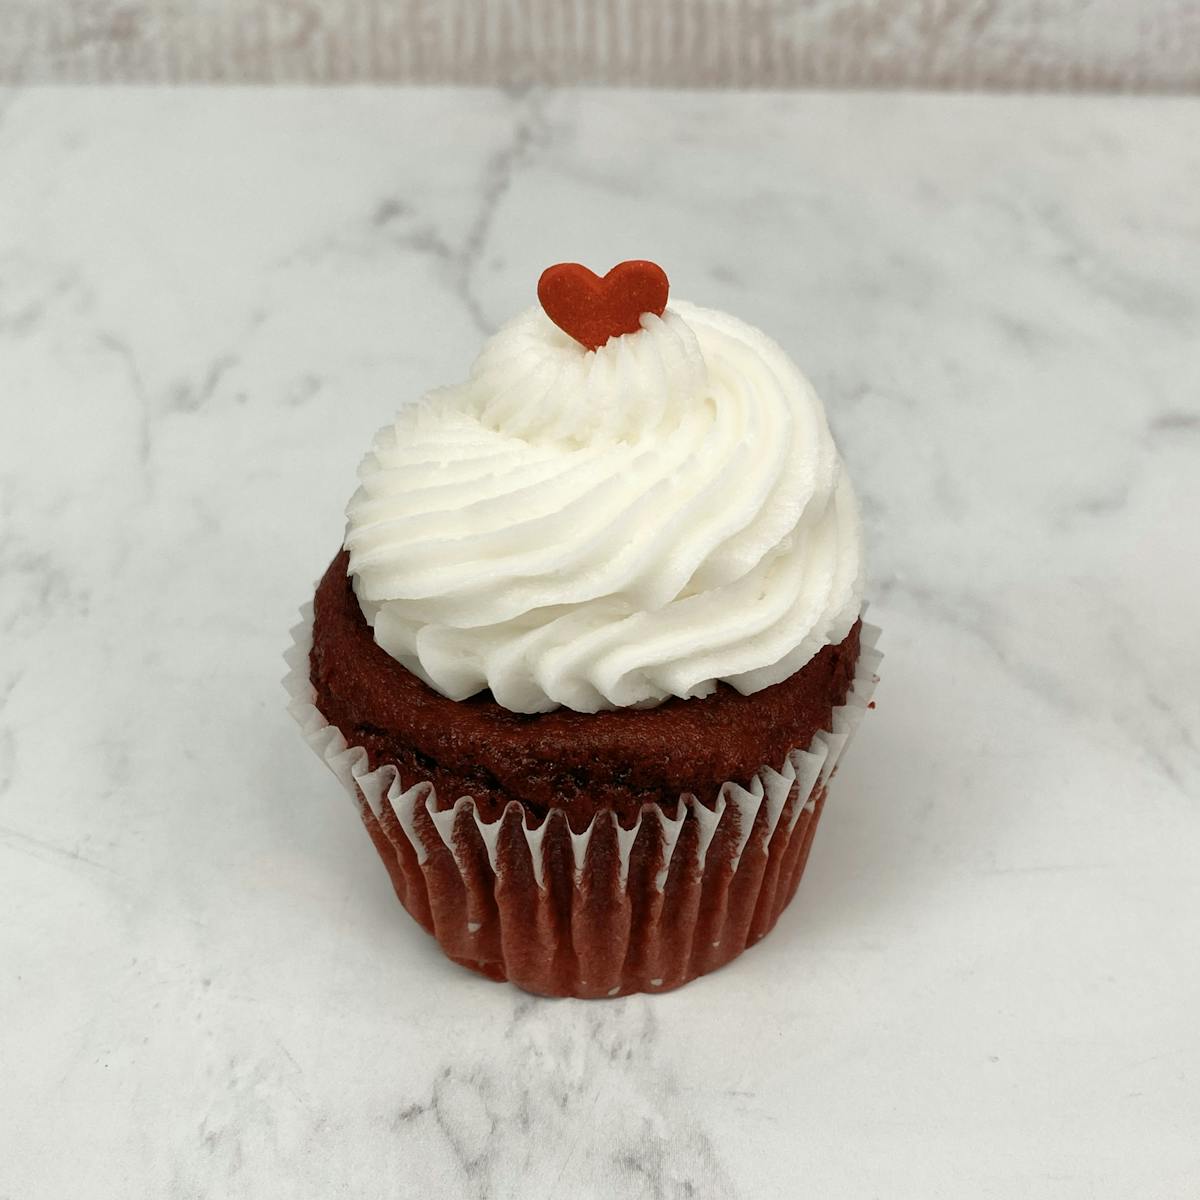 a red velvet cupcake